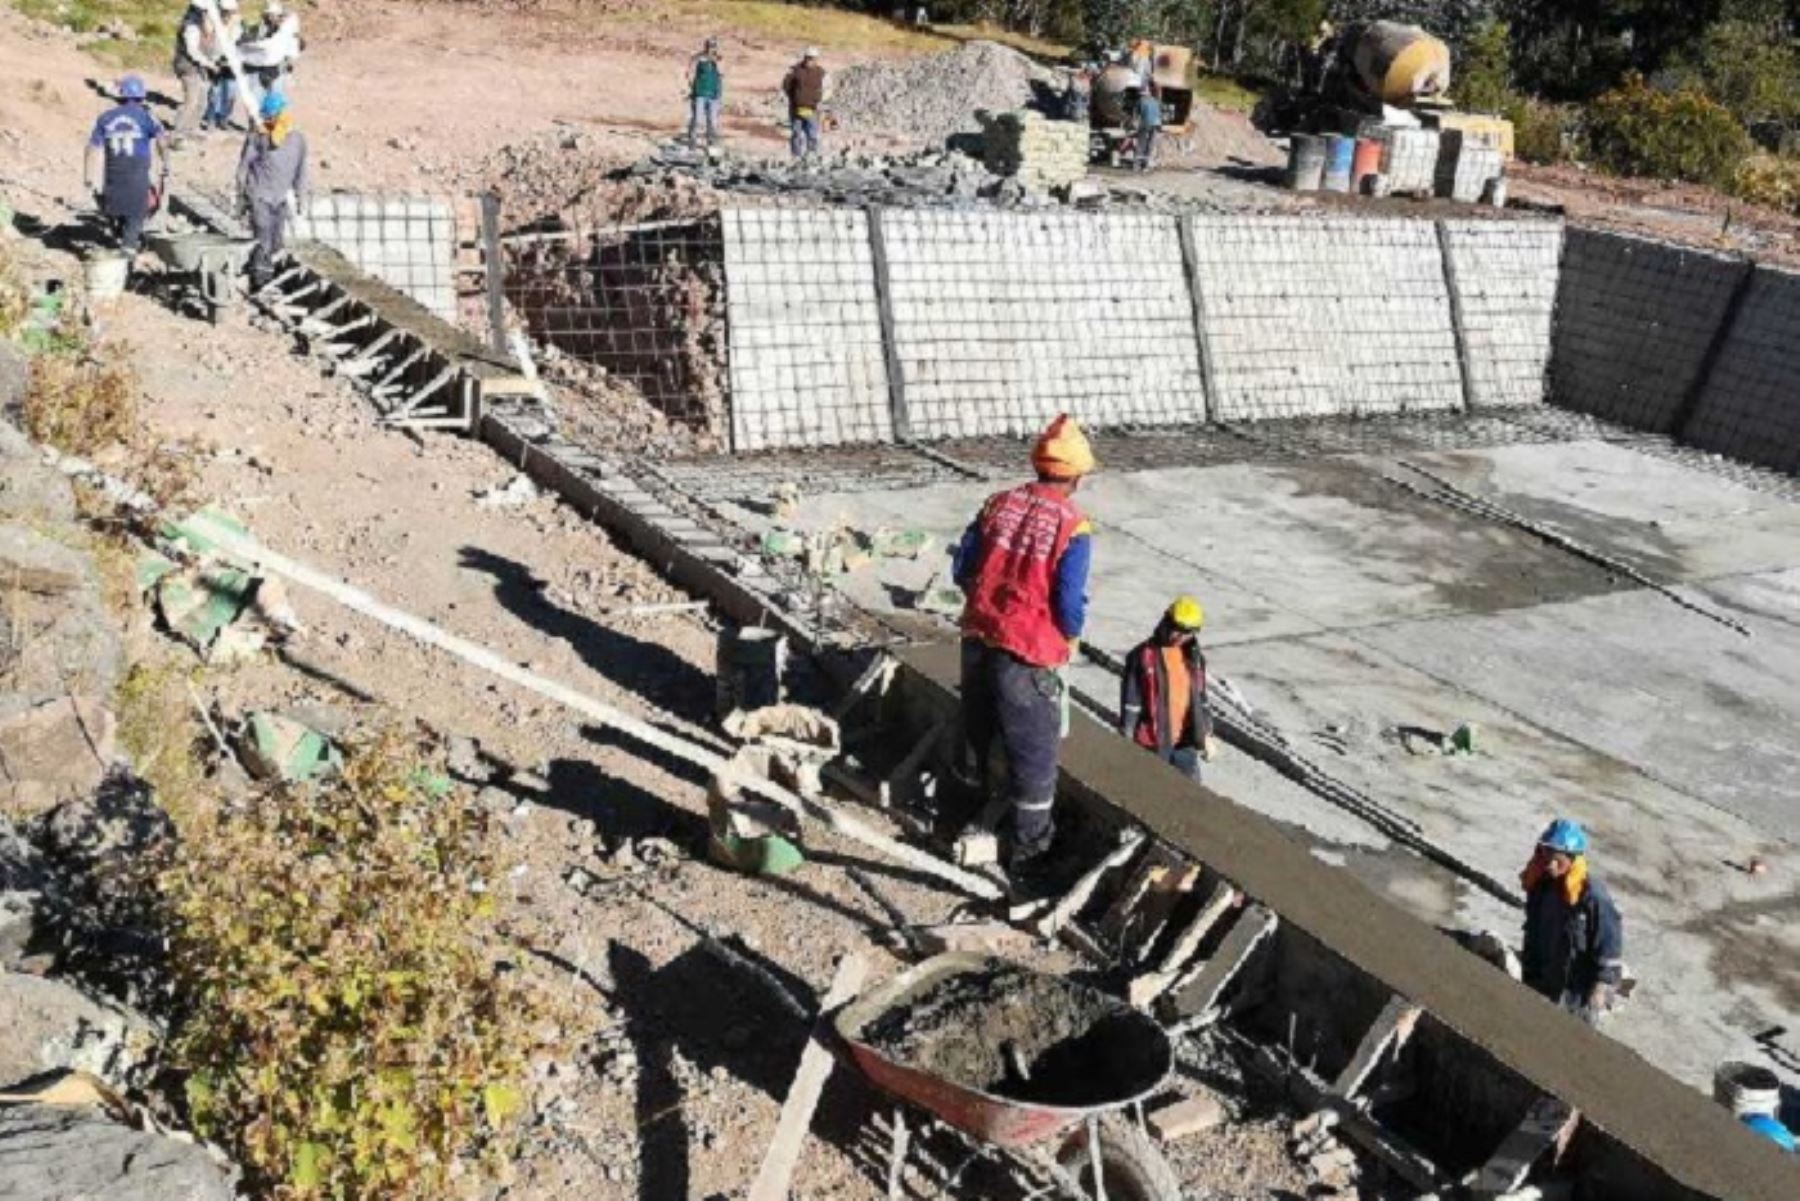 Contraloría General de la República evidenció cuatro riesgos en la construcción de defensas ribereñas de la localidad de Nuevo Hualapampa, en el distrito de Huarmaca, provincia de Huancabamba, en la sierra piurana, cuya inversión supera los S/ 7 millones.